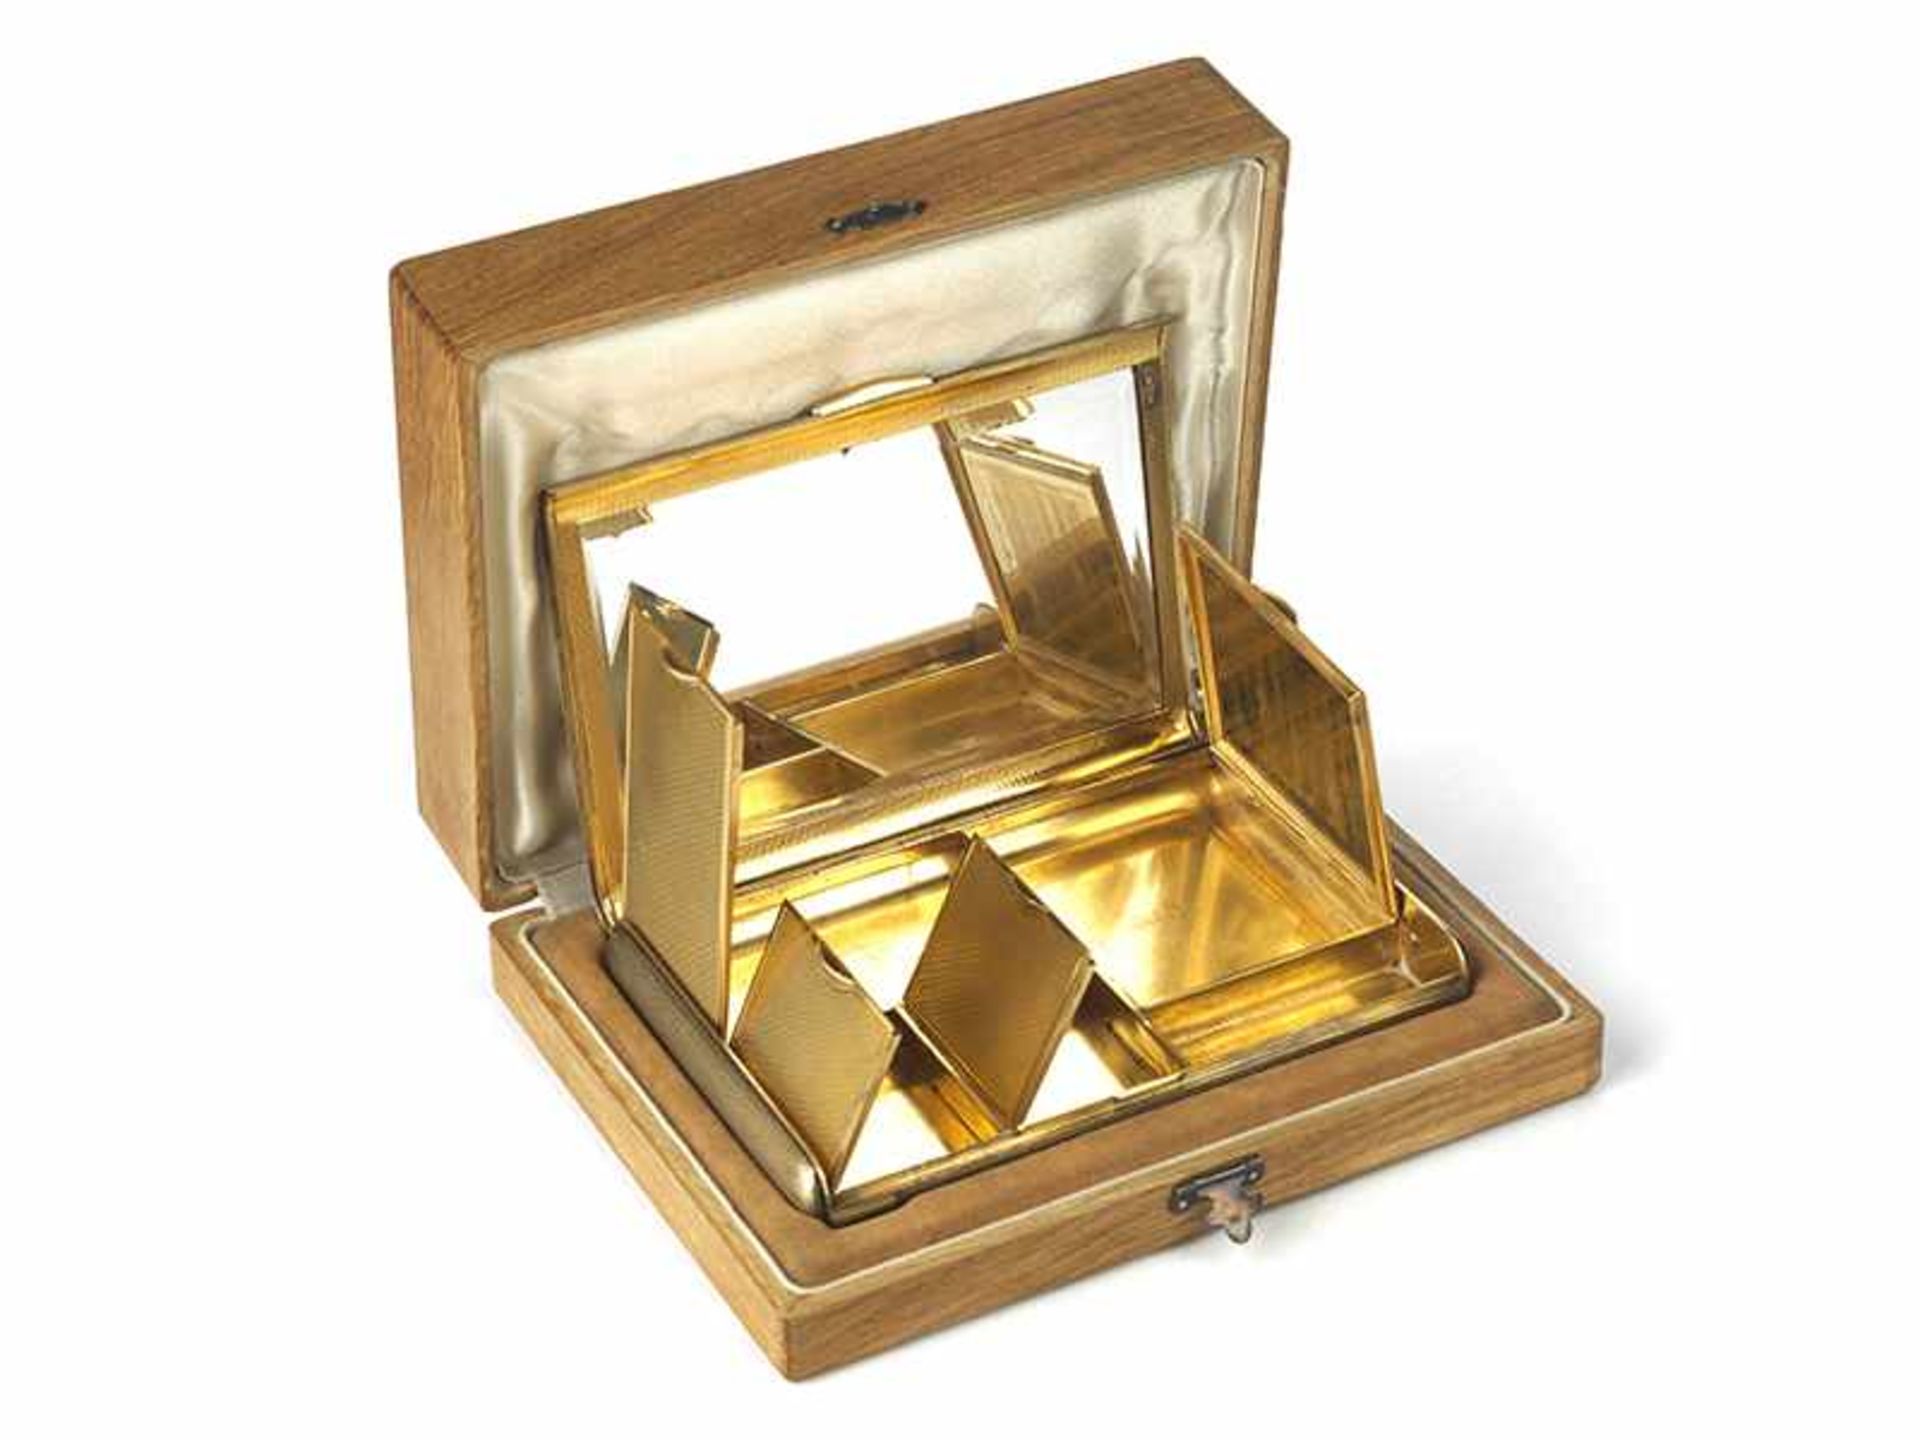 Vergoldetes, reich kassetiertes Etui 2 x 15 x 10,1 cm. Gewicht: 482 g. Steckleiste vierfach mit - Bild 12 aus 17